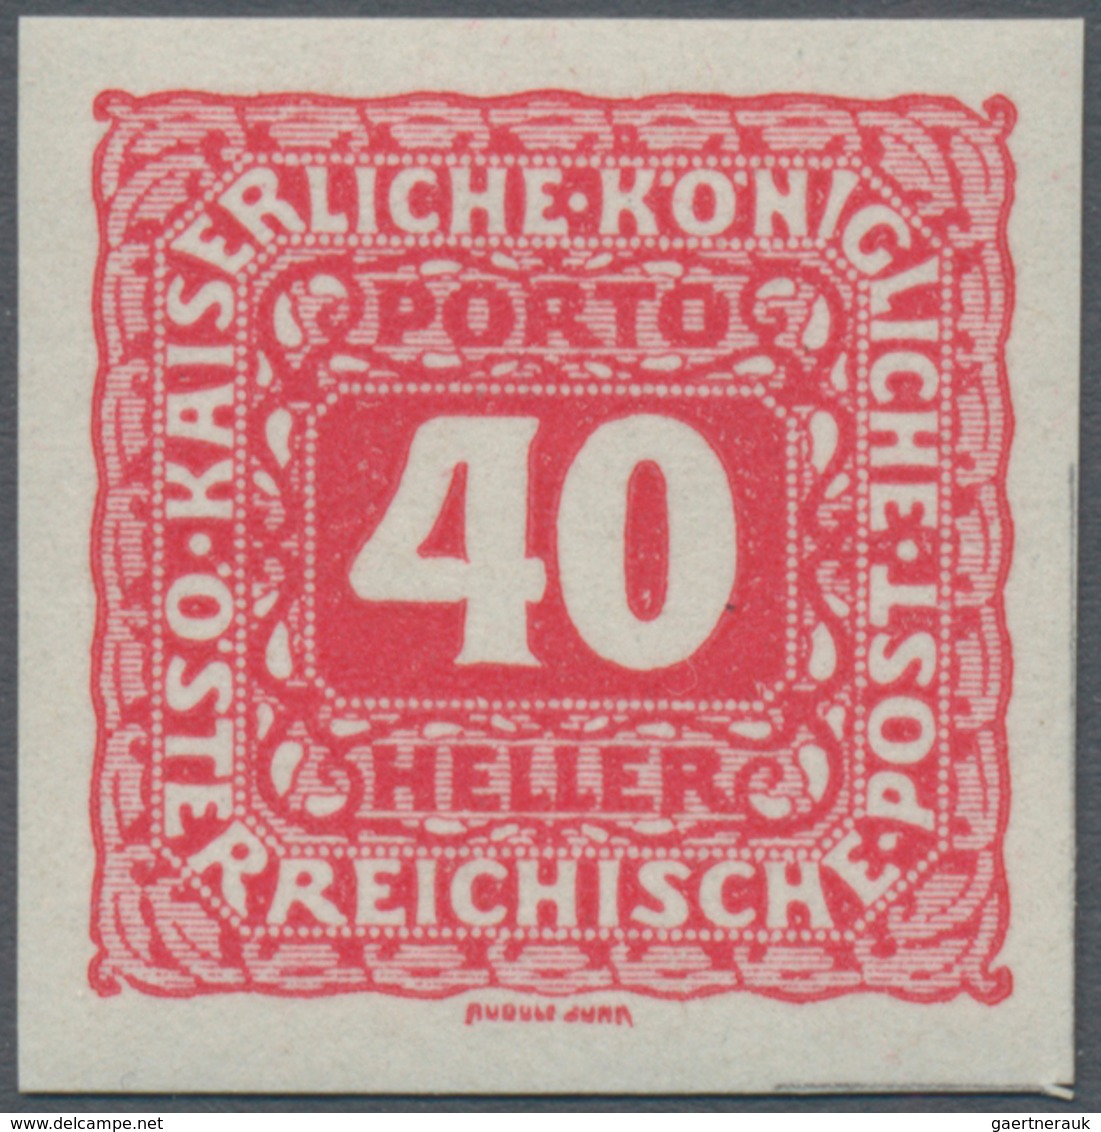 Österreich - Portomarken: 1916, 5 H. bis 10 Kr., komplette Serie von elf Werten UNGEZÄHNT, postfrisc